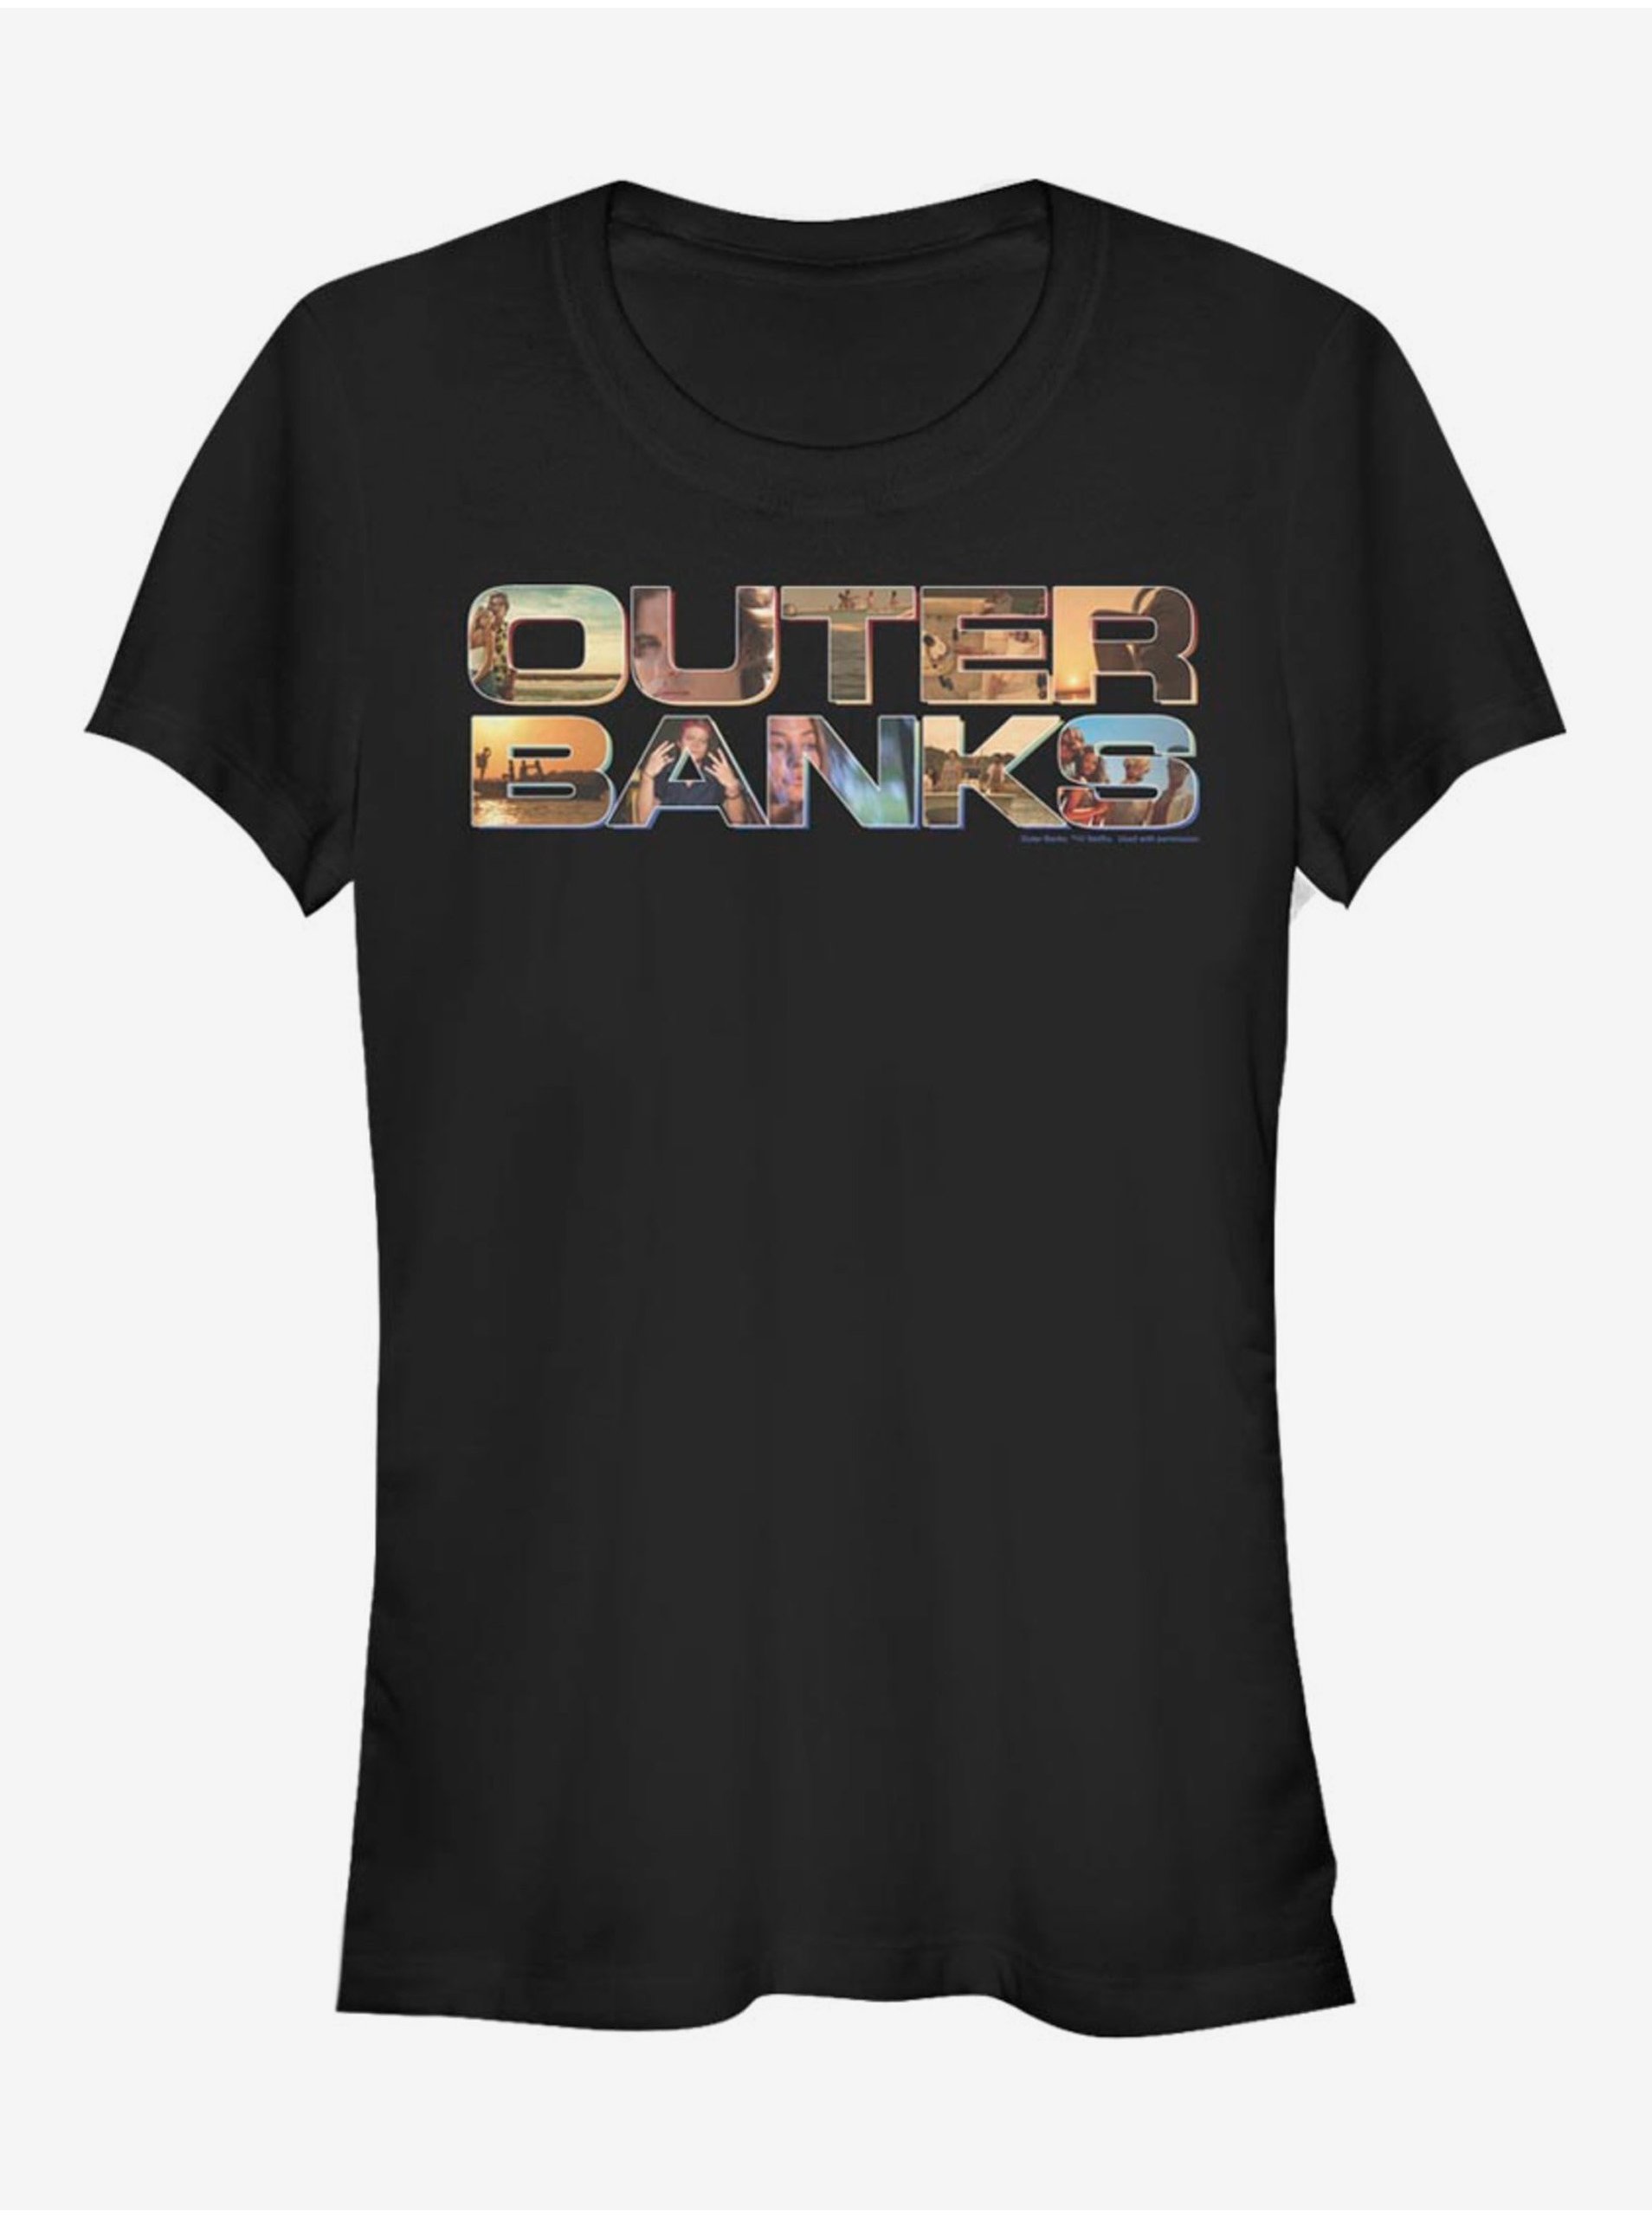 Lacno Logo Outer Banks ZOOT. FAN Netflix - dámske tričko